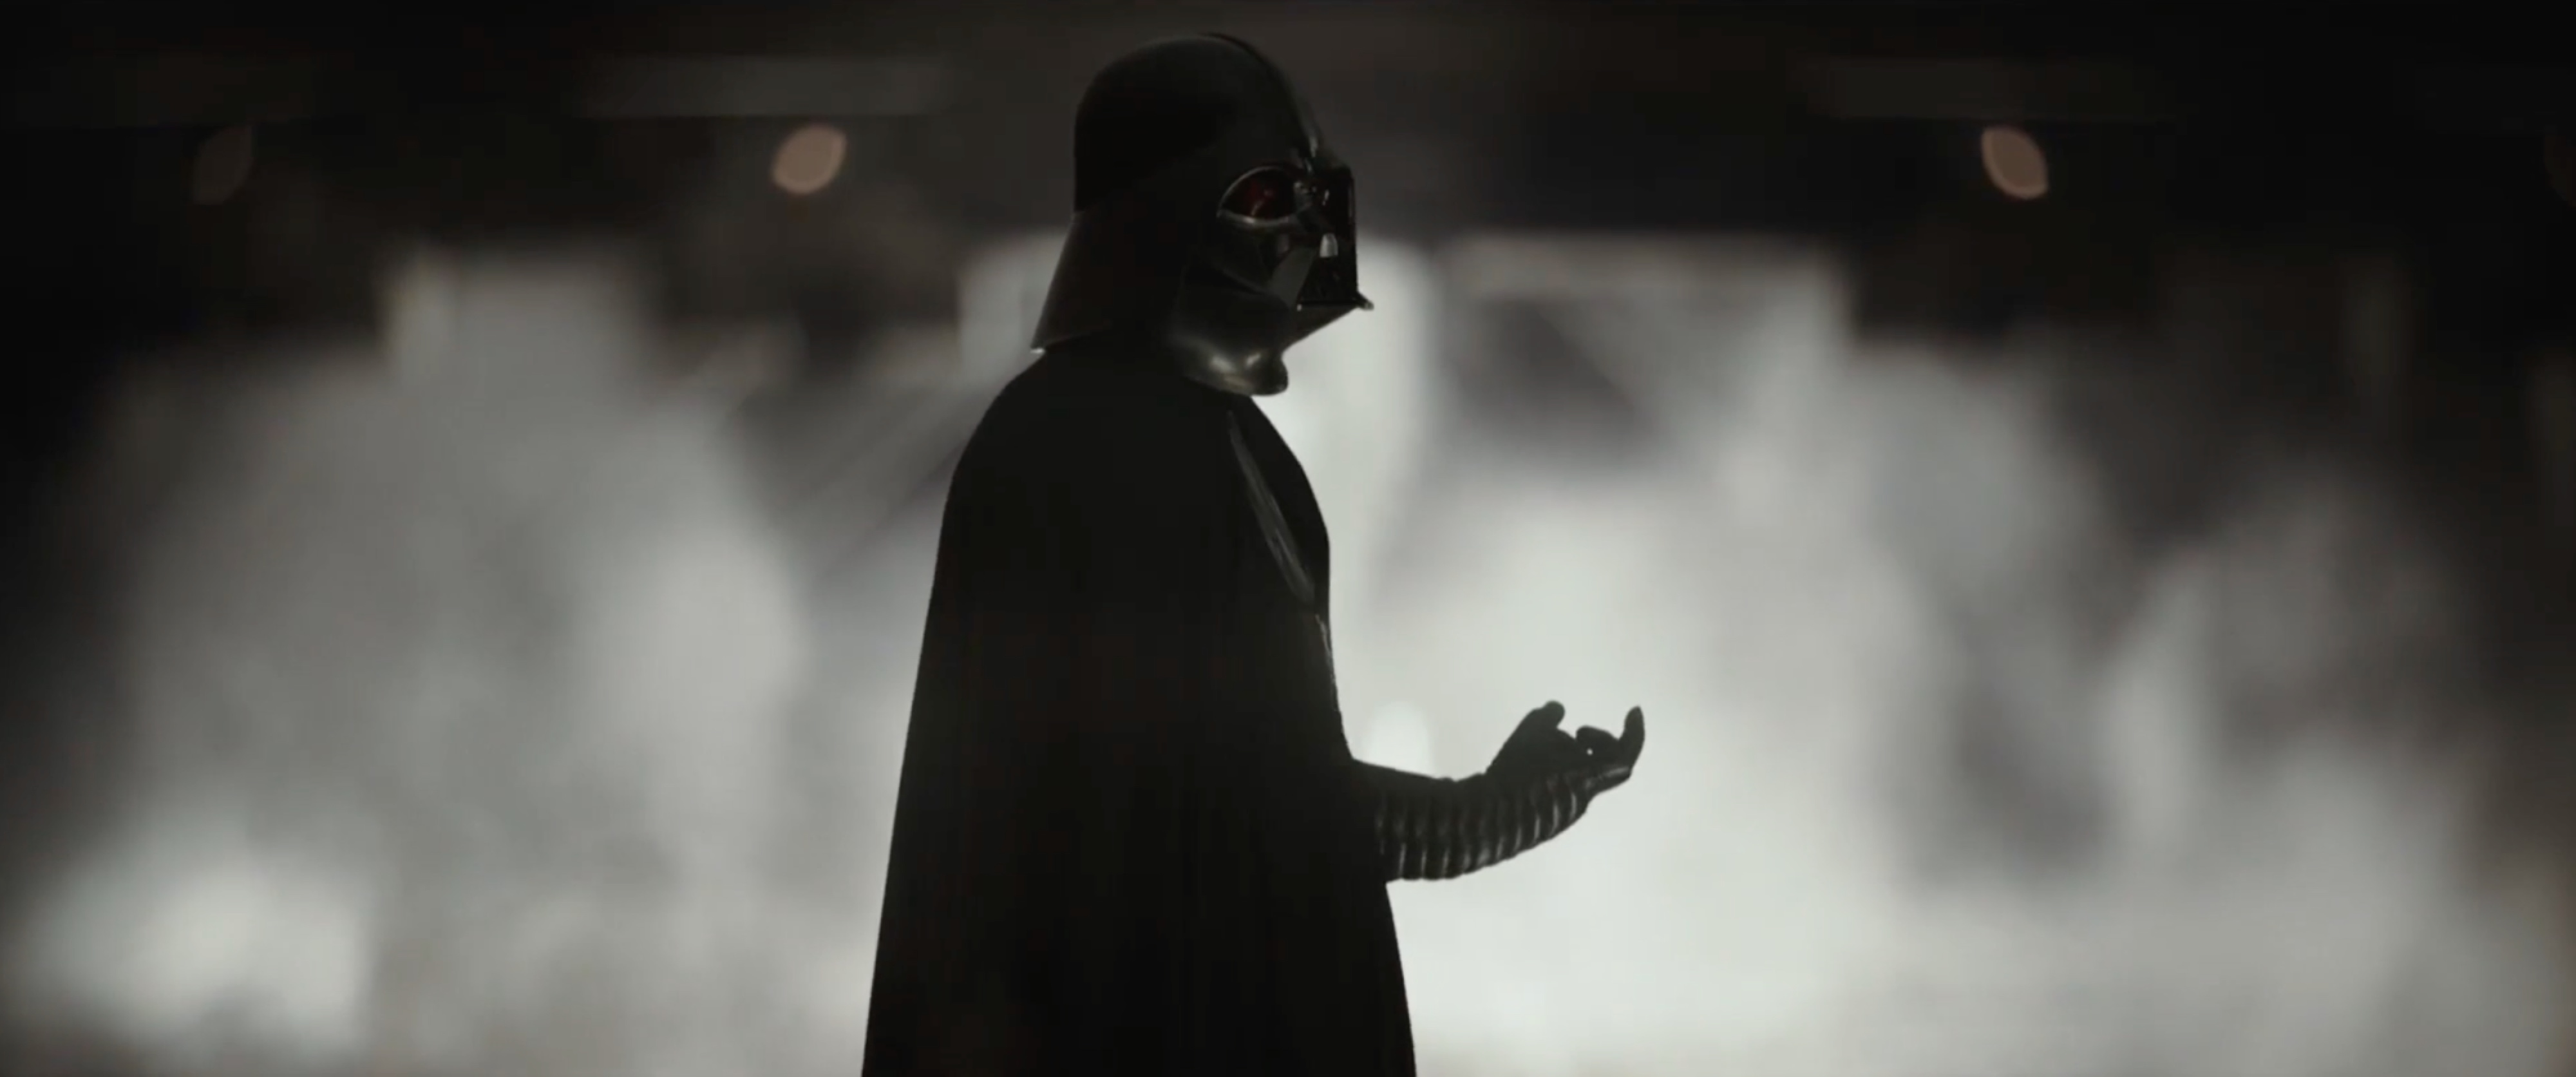 Darth Vader Rogue One Choke - HD Wallpaper 